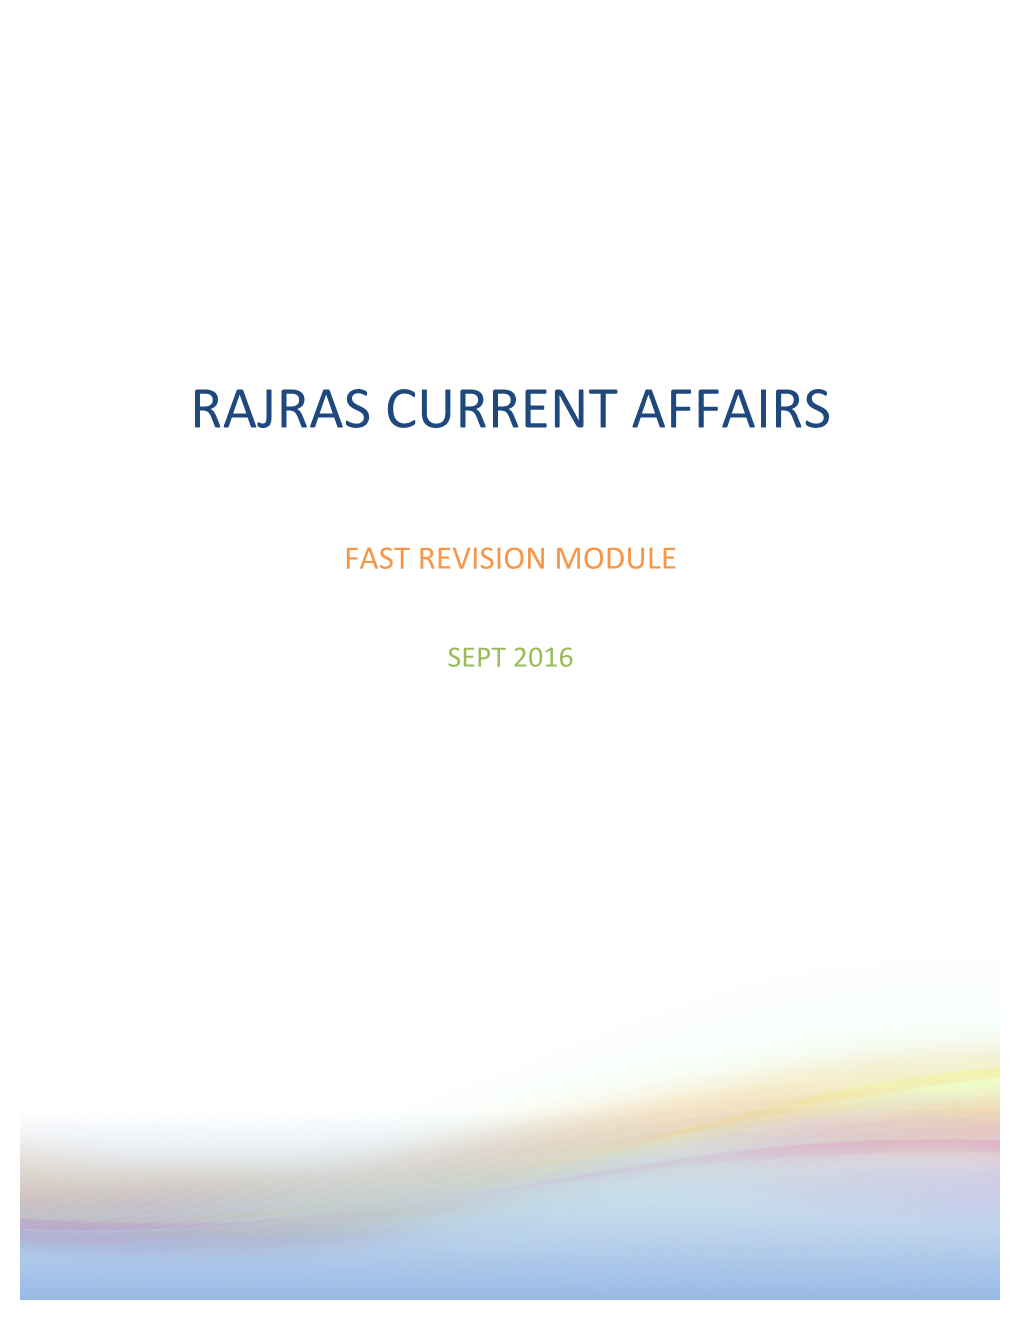 Rajras Current Affairs